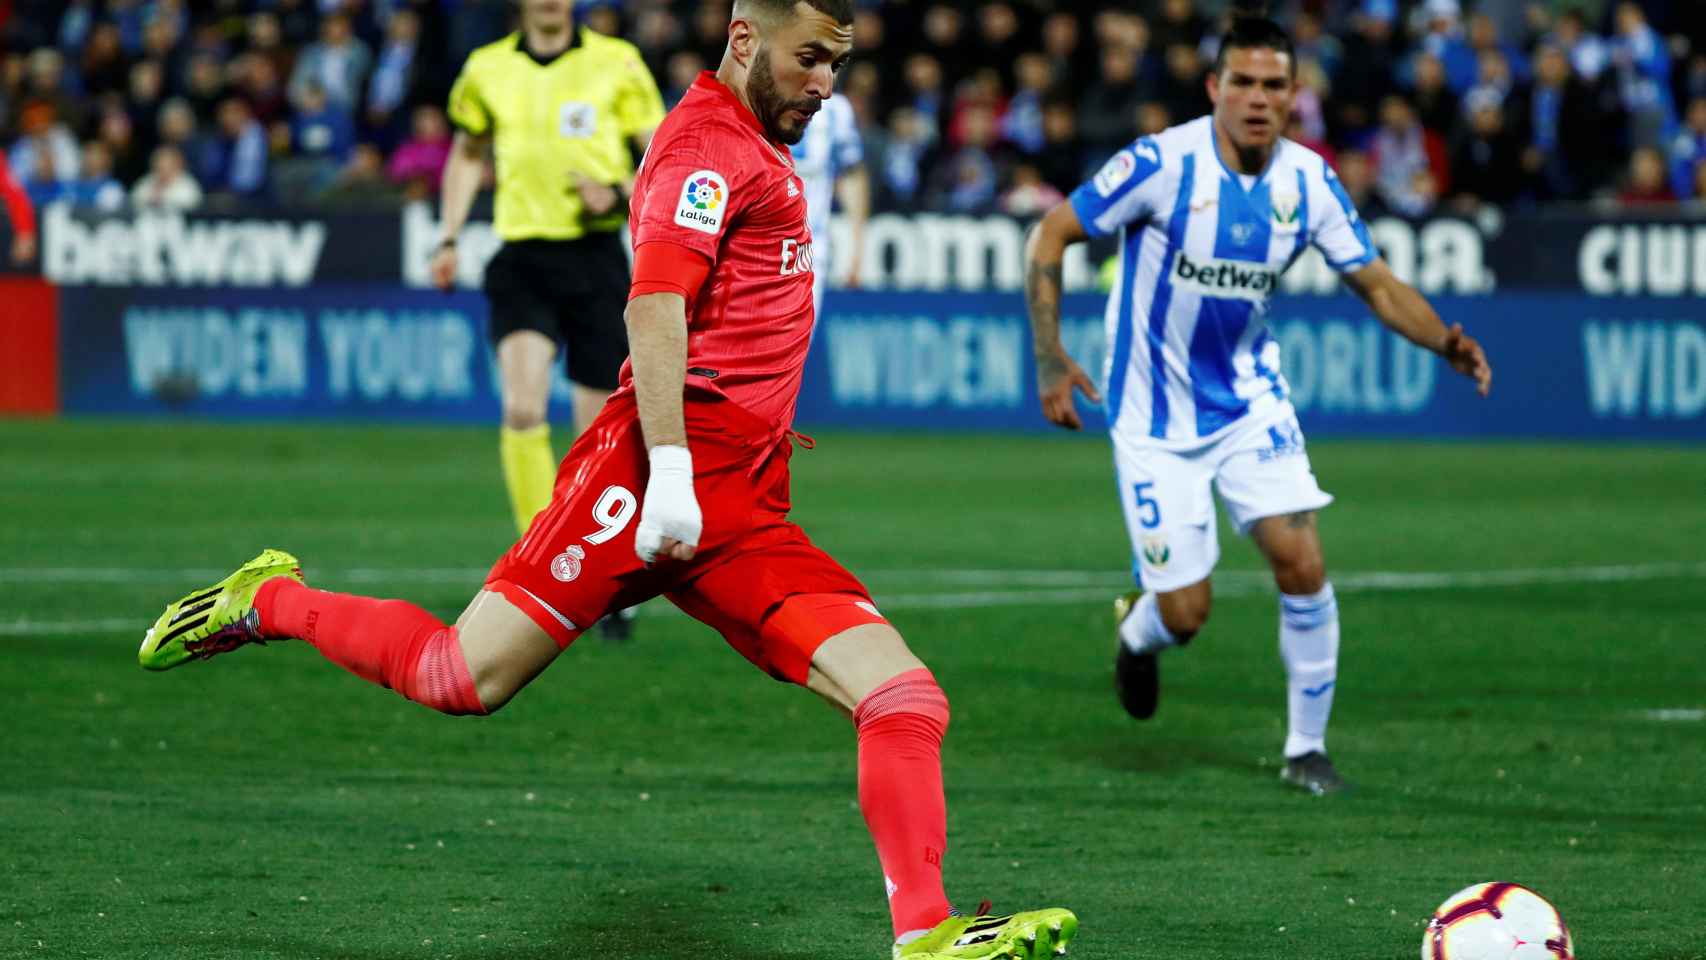 Benzema dispara a portería para anotar el empate ante el Leganés